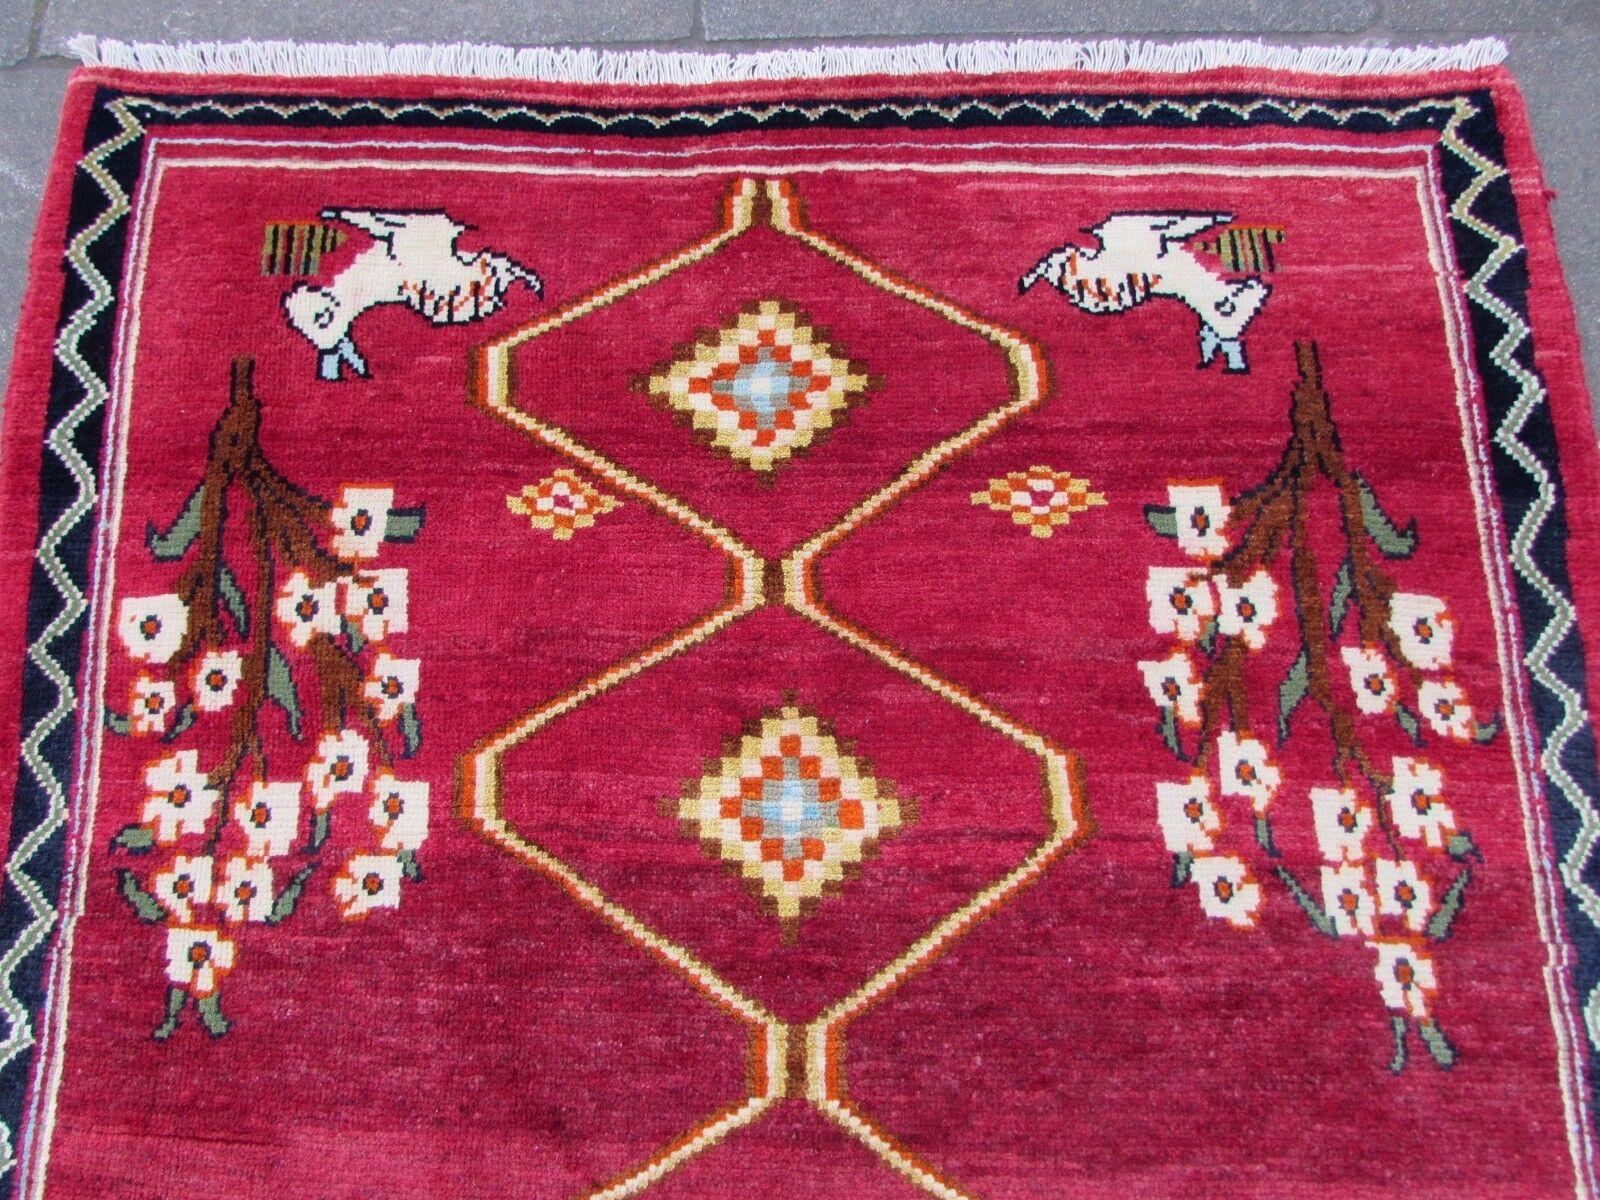 Mit diesem handgefertigten roten Gabbeh-Teppich im persischen Vintage-Stil verleihen Sie Ihrem Zuhause einen Hauch von traditionellem Charme. Dieser in den 1970er Jahren gefertigte Teppich zeigt einen leuchtend roten Hintergrund, der mit skurrilen